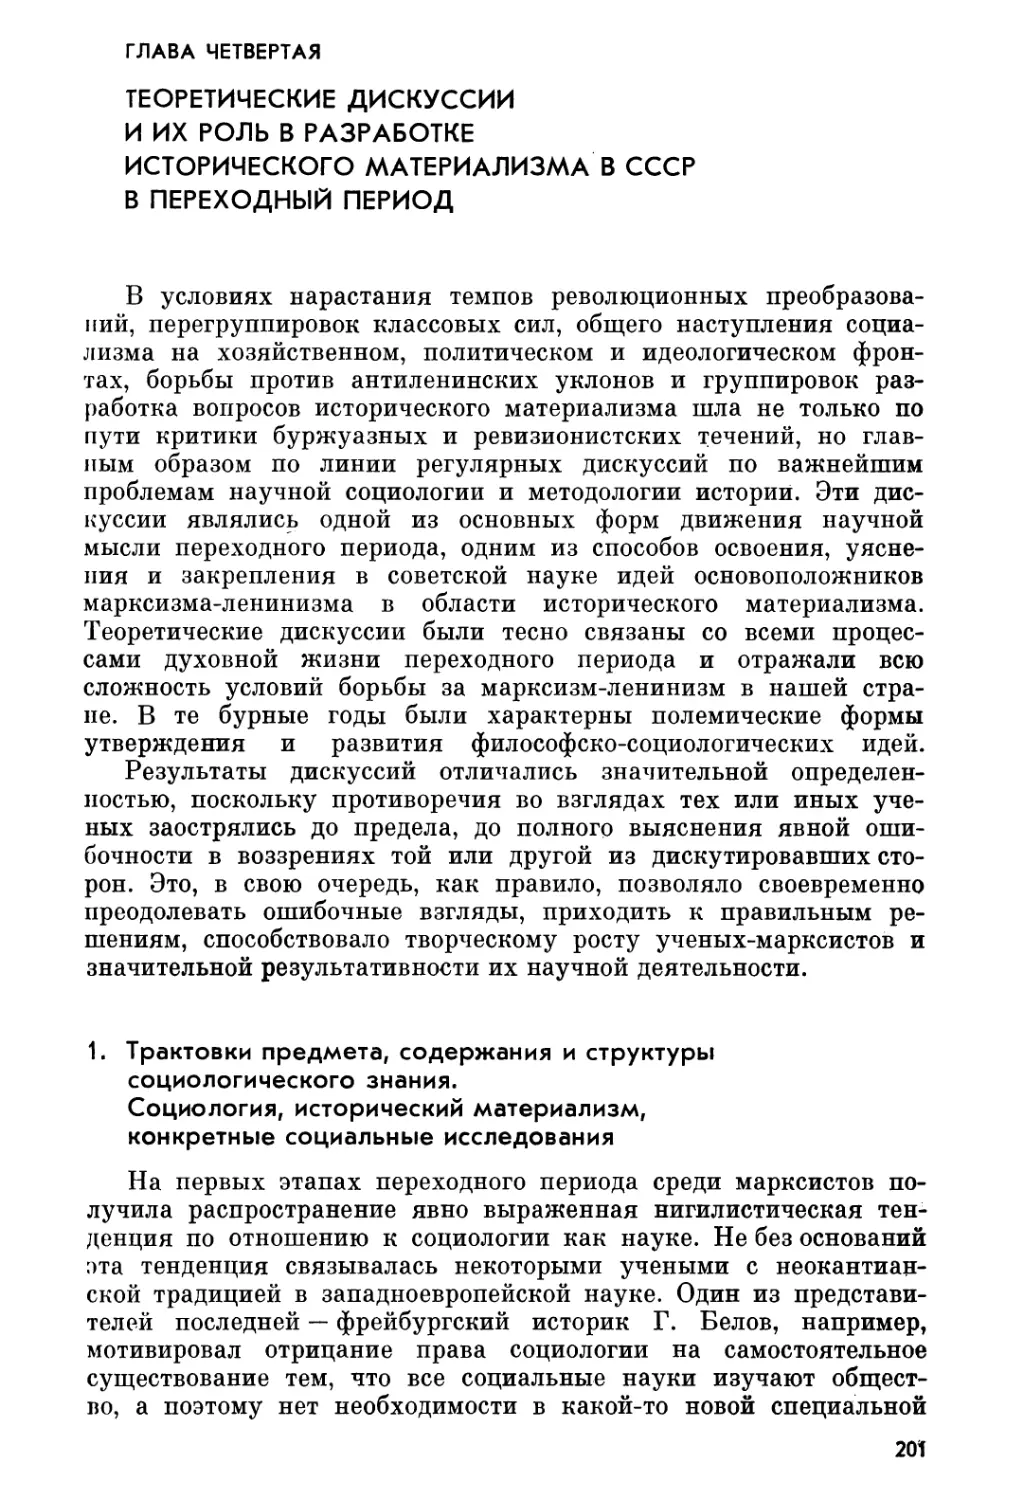 Глава четвертая. Теоретические дискуссии и их роль в разработке исторического материализма в СССР в переходный период